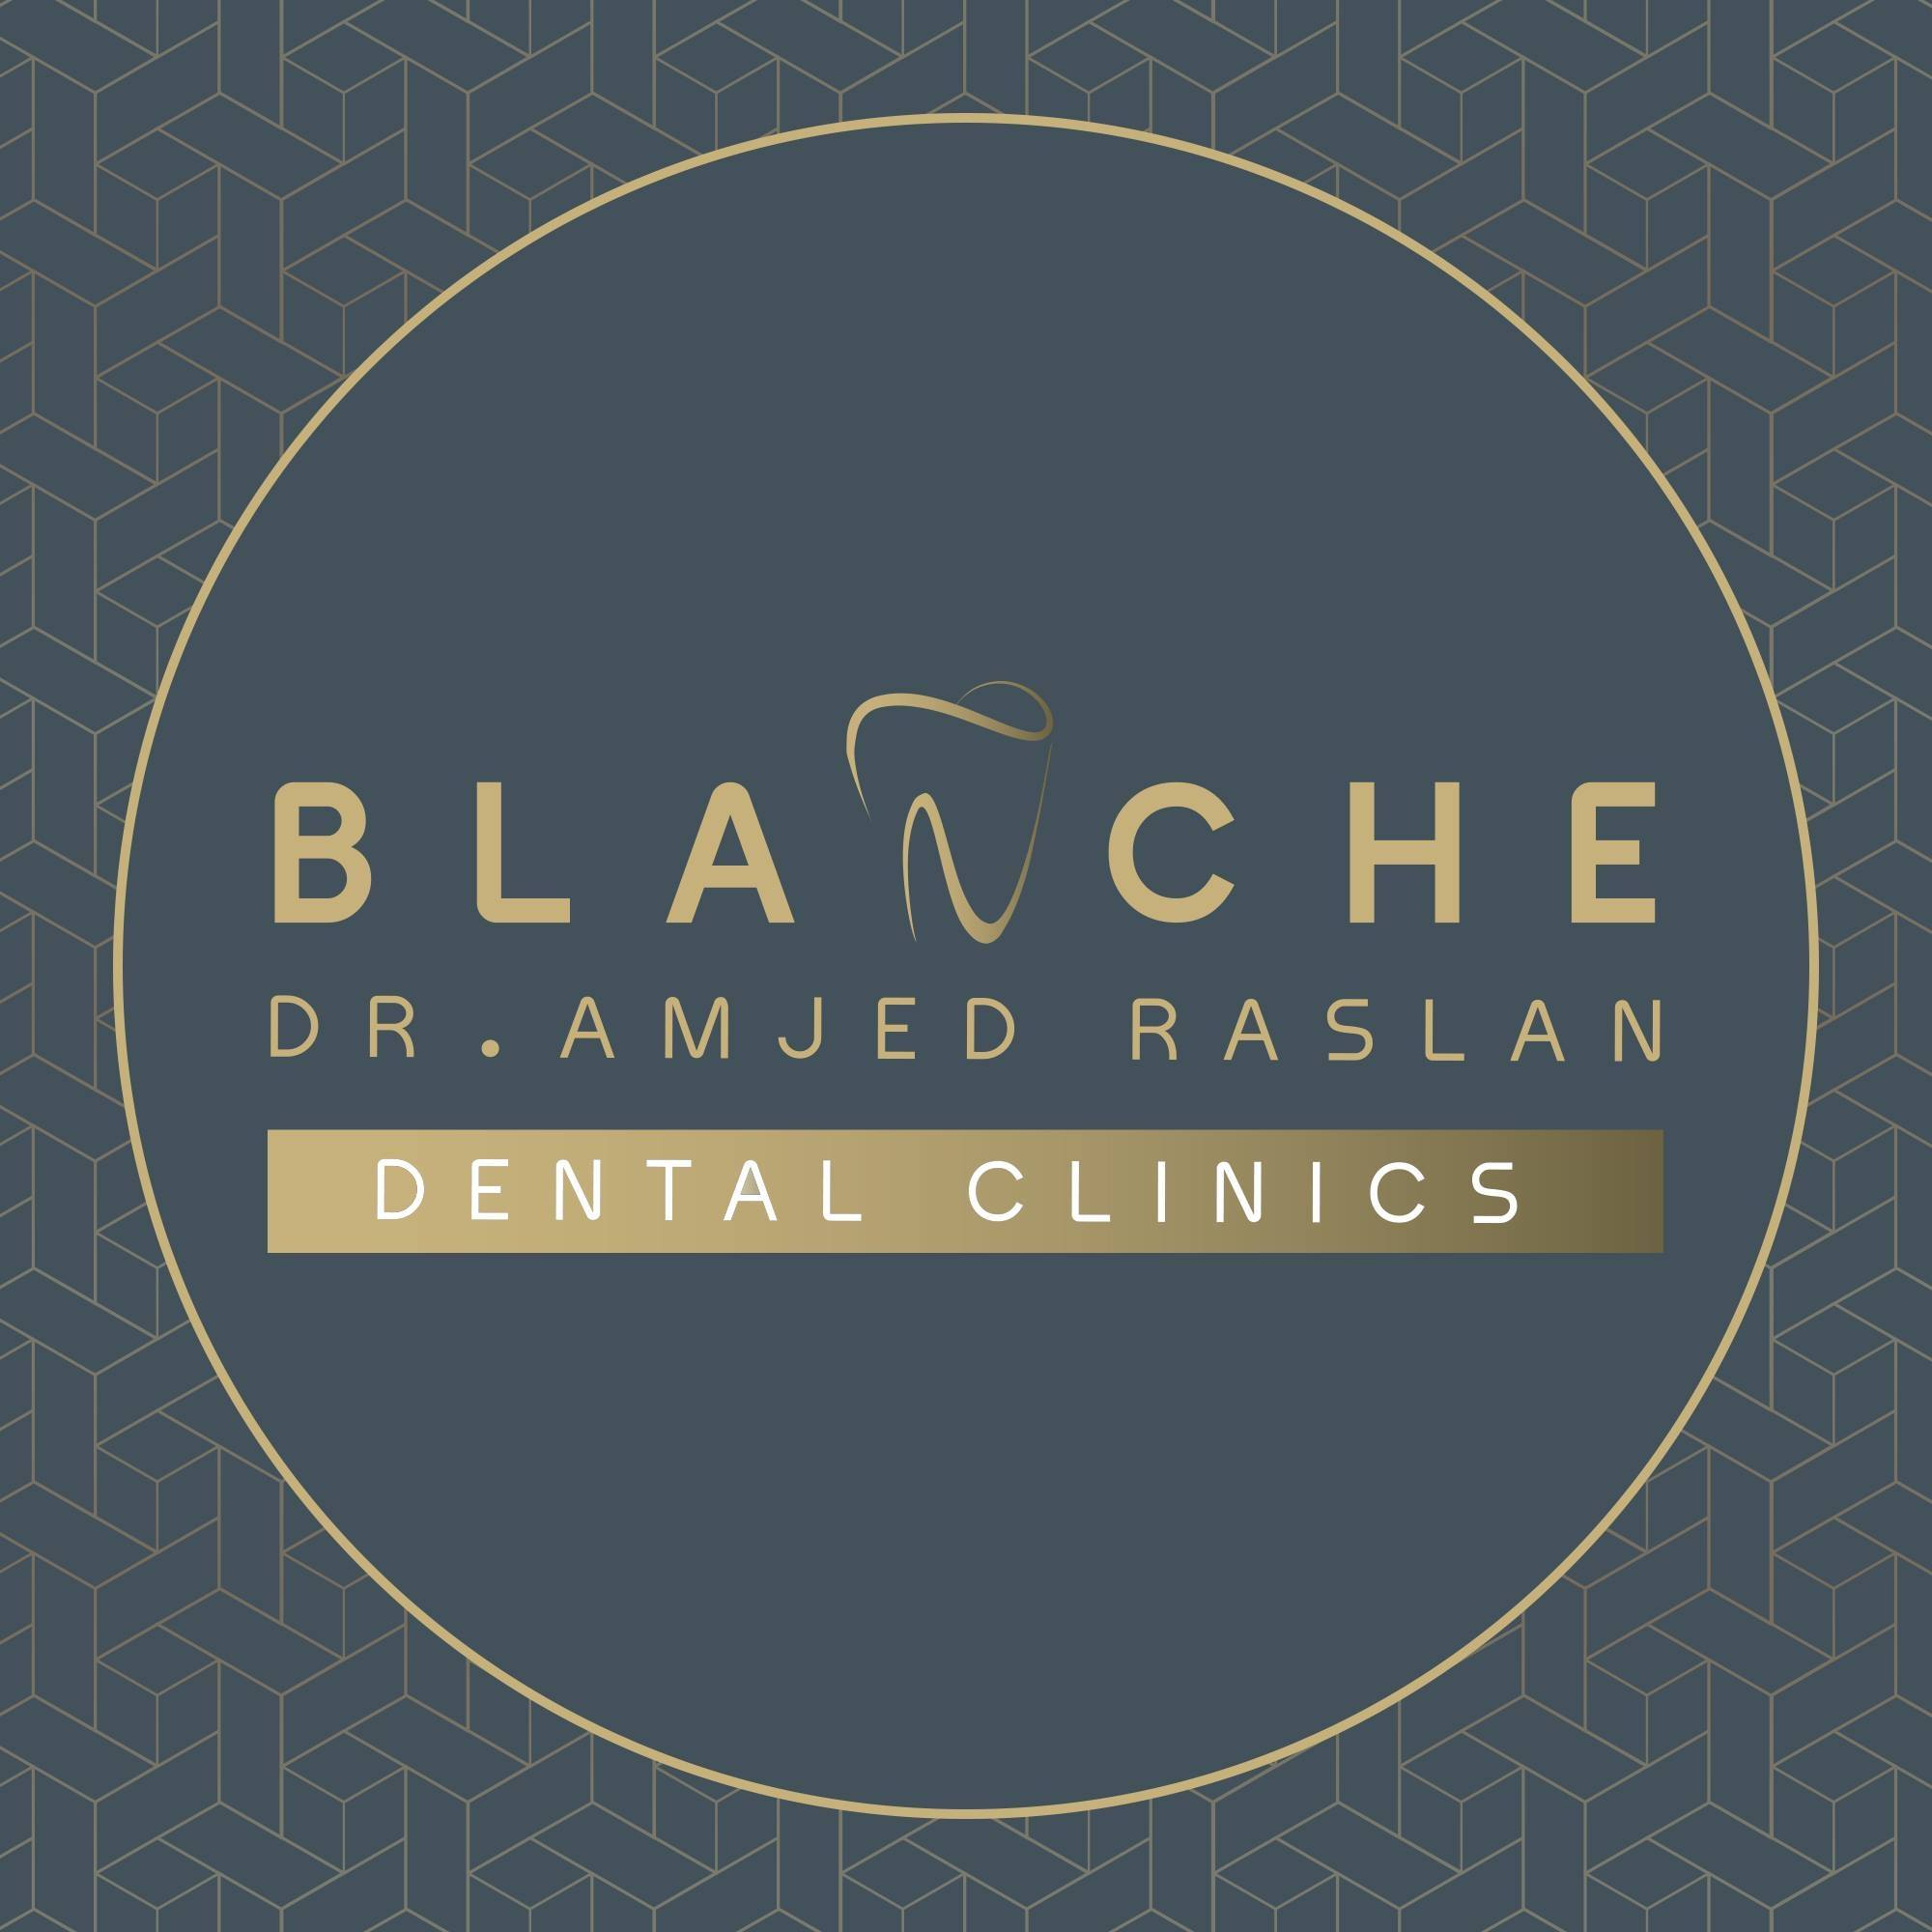 Clinics Dr Amgad Raslan Blanche Dental